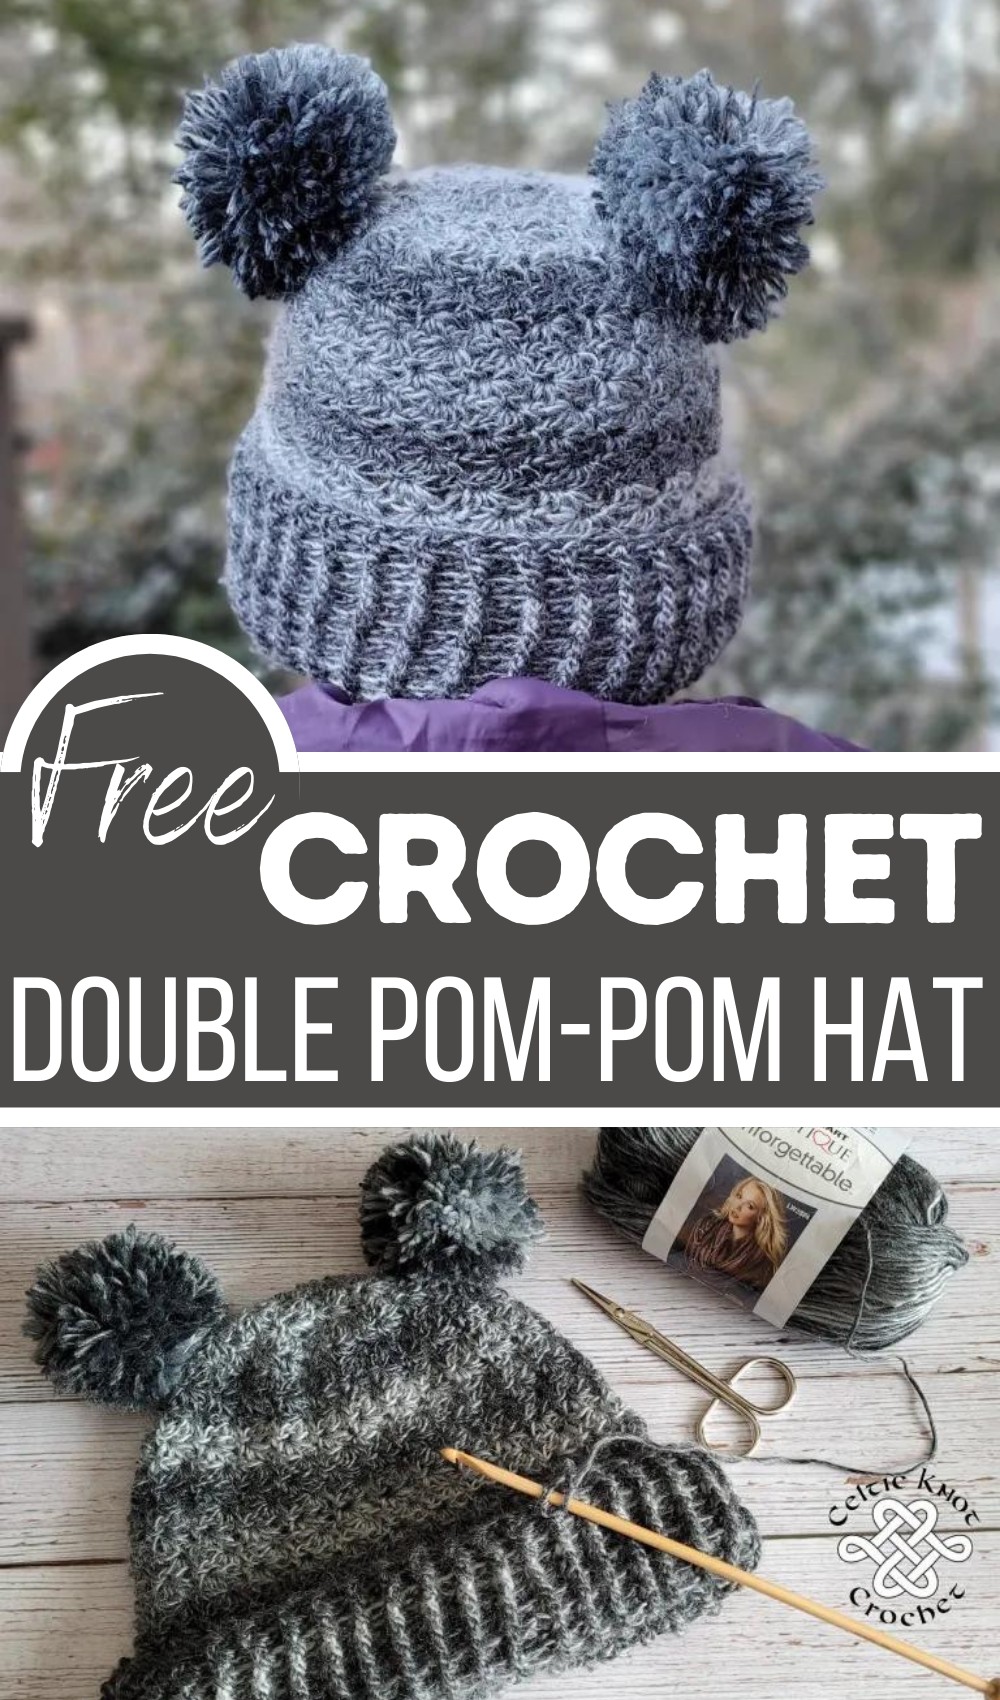 Double Pom-Pom Hat